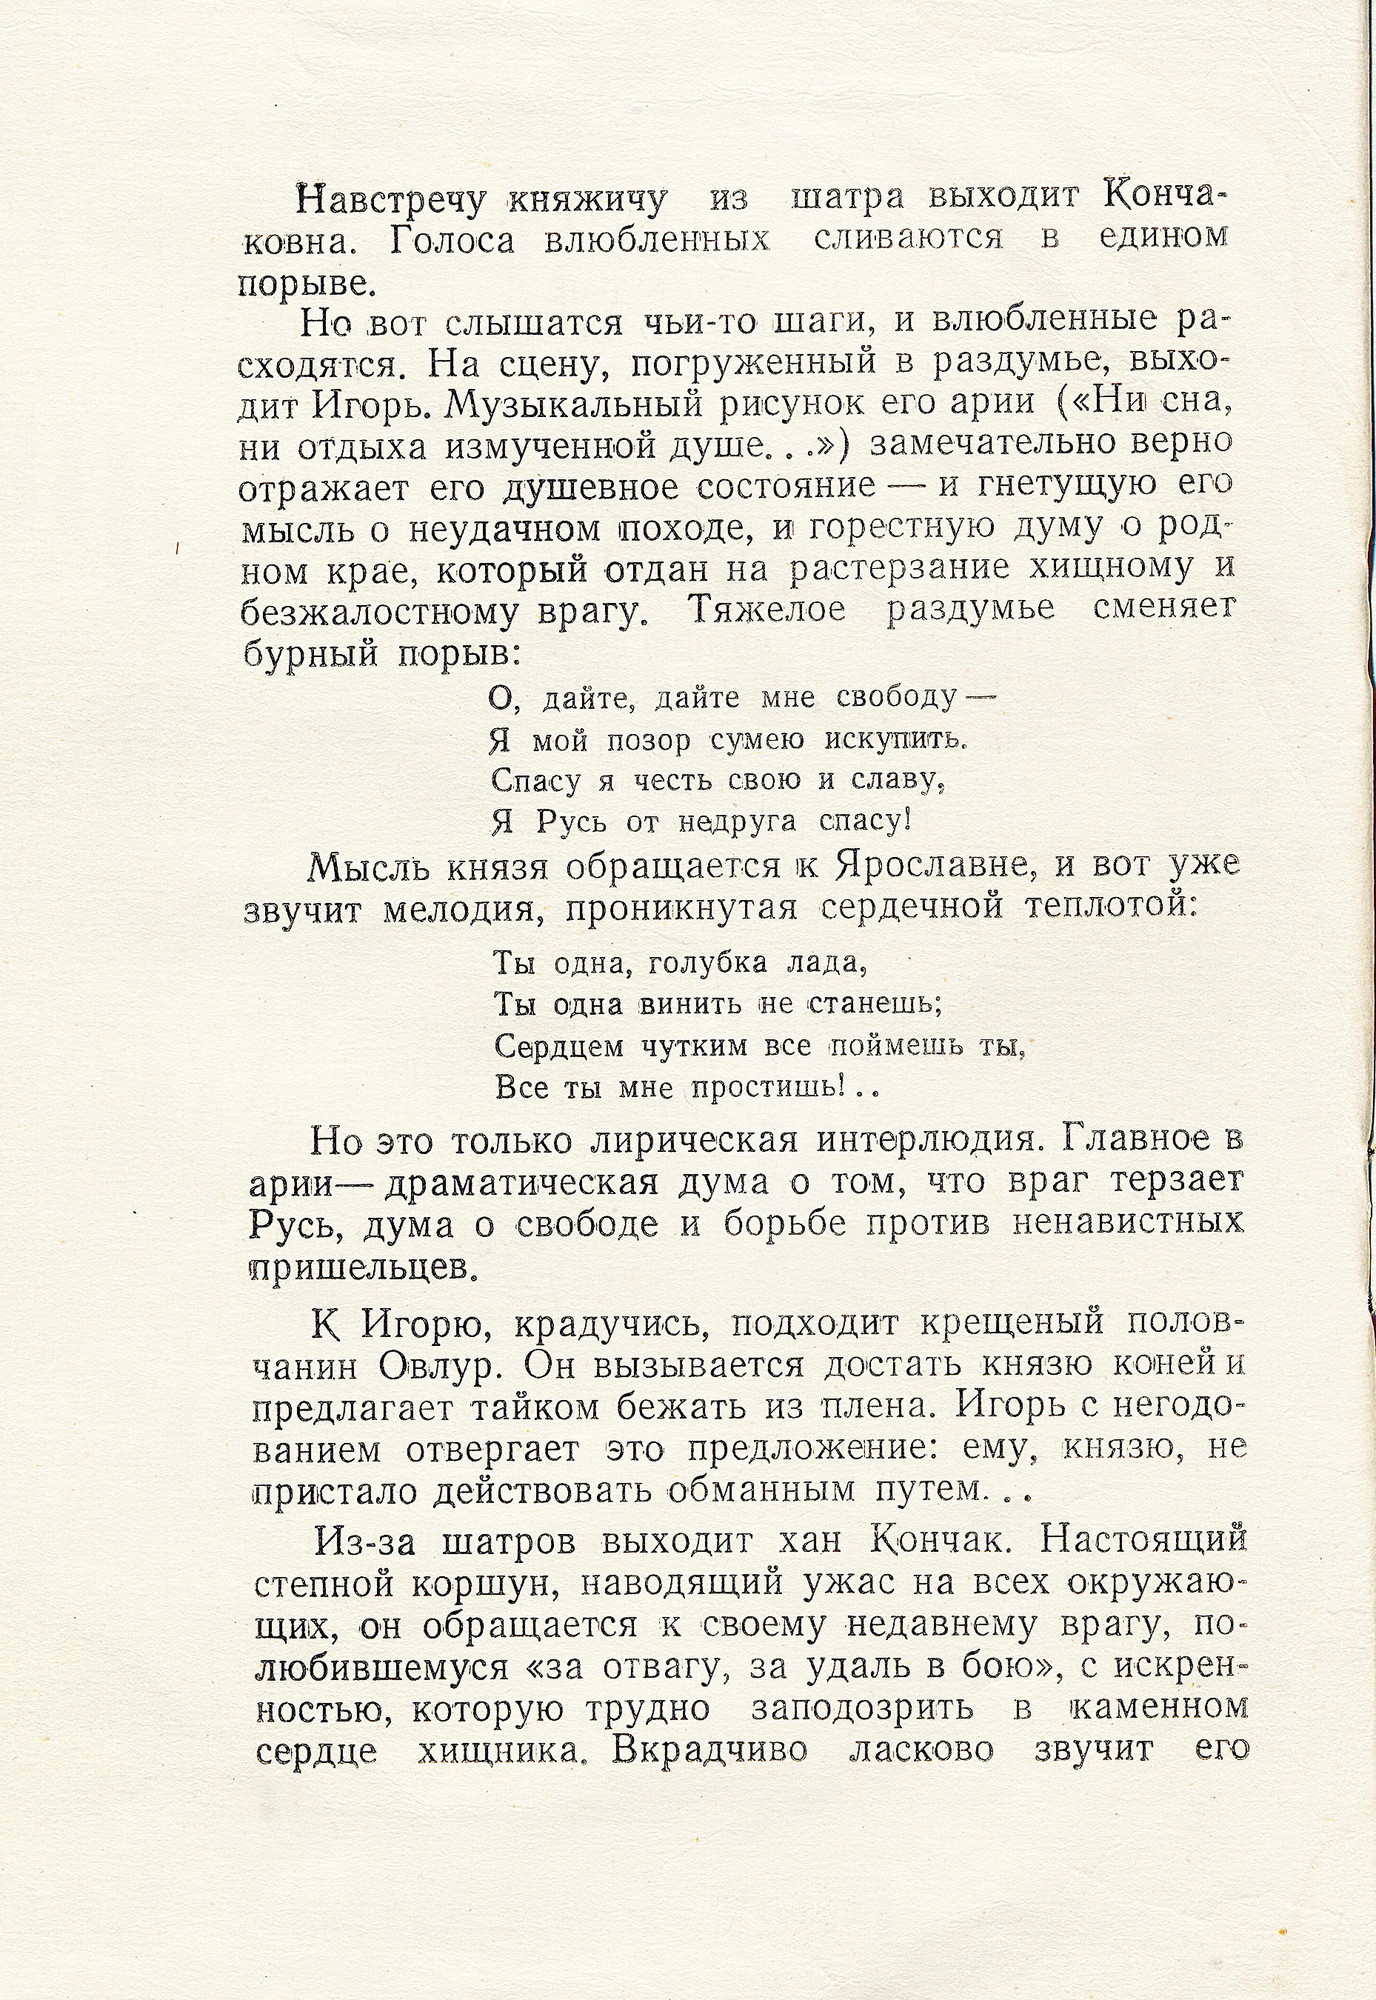 А. Бородин (1833–1887). Опера "Князь Игорь"